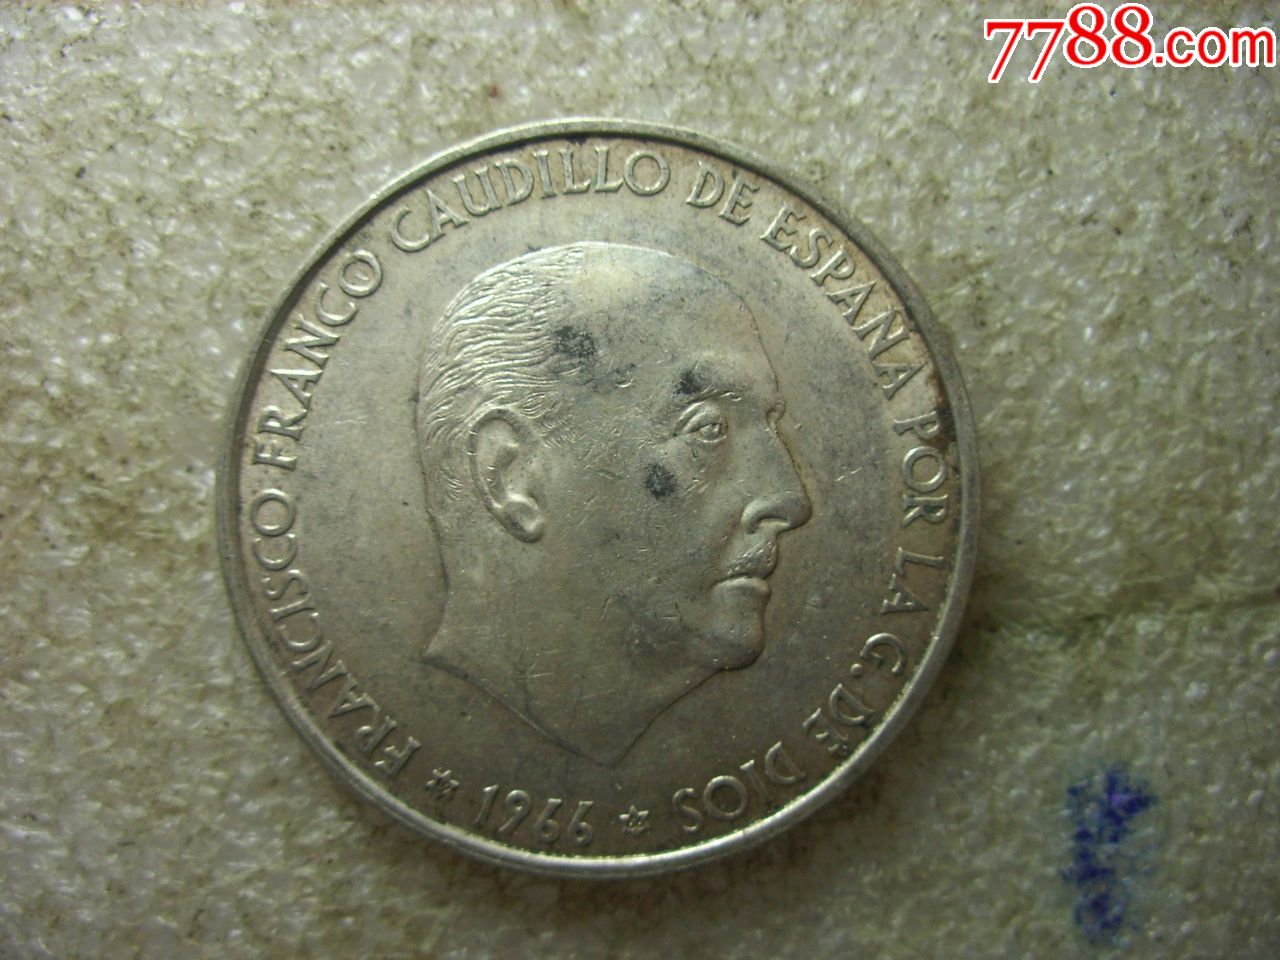 原味美品1966西班牙弗朗哥大银币